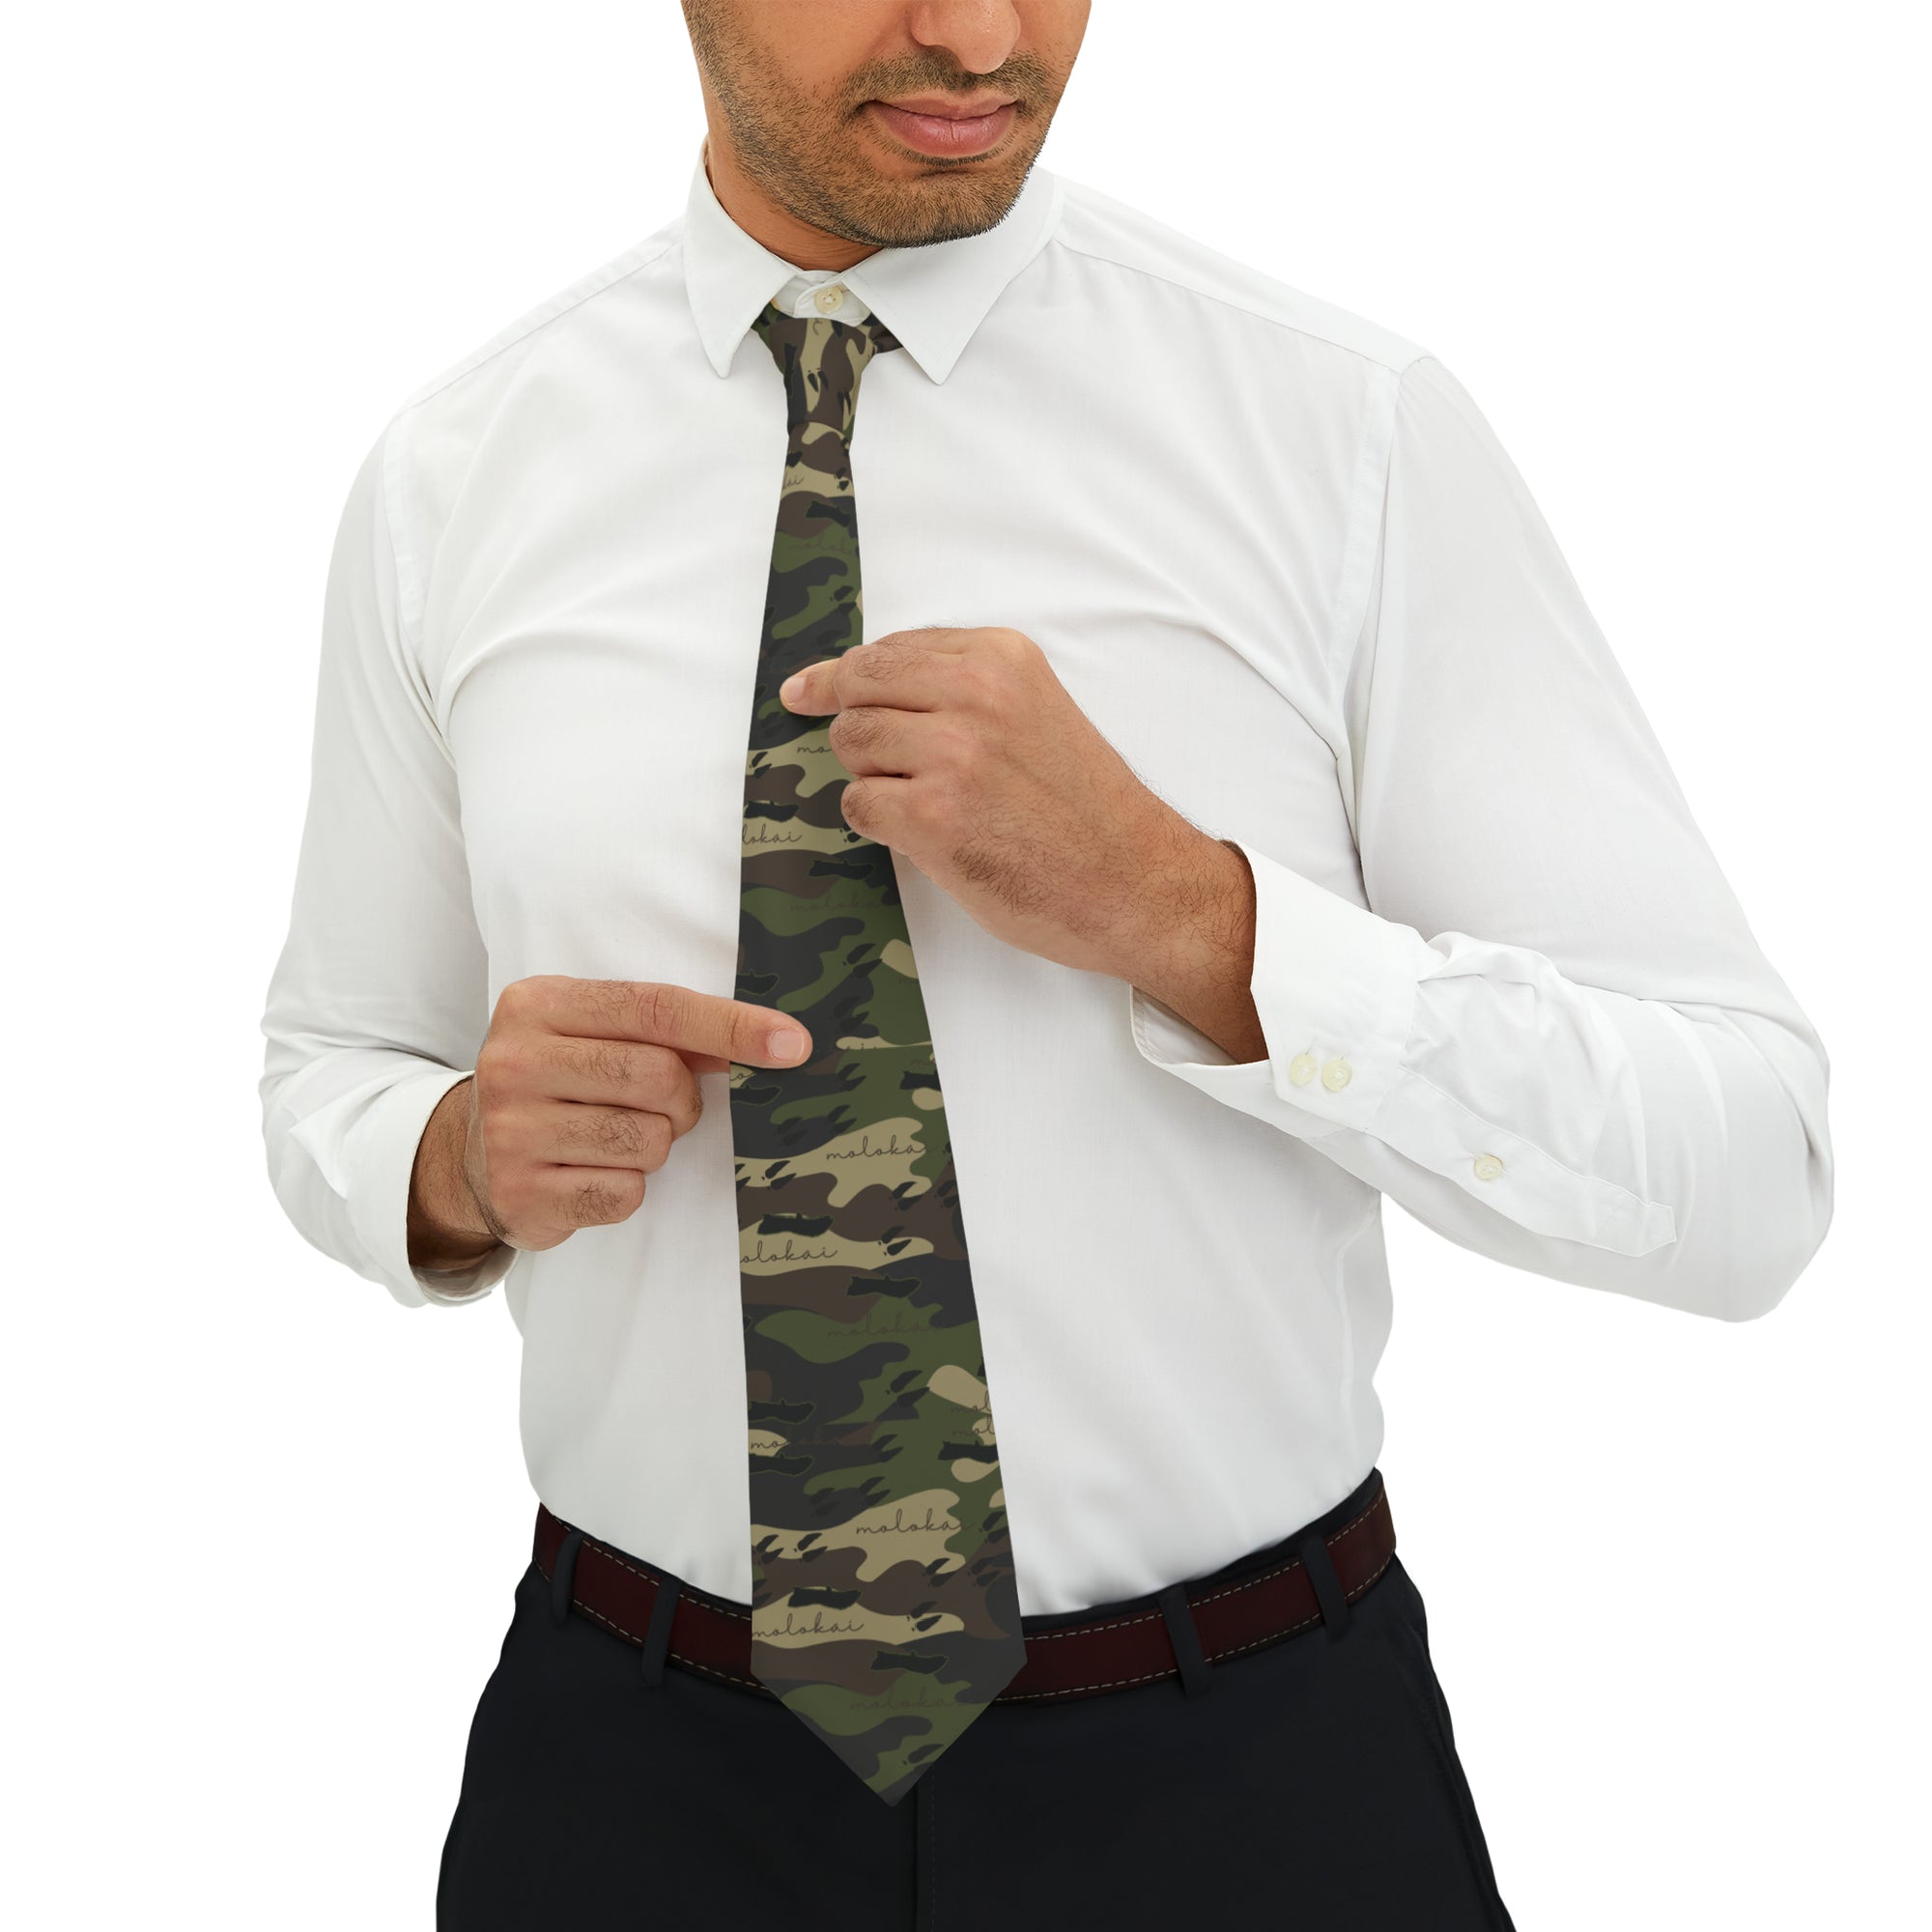 Molokai Camo Necktie